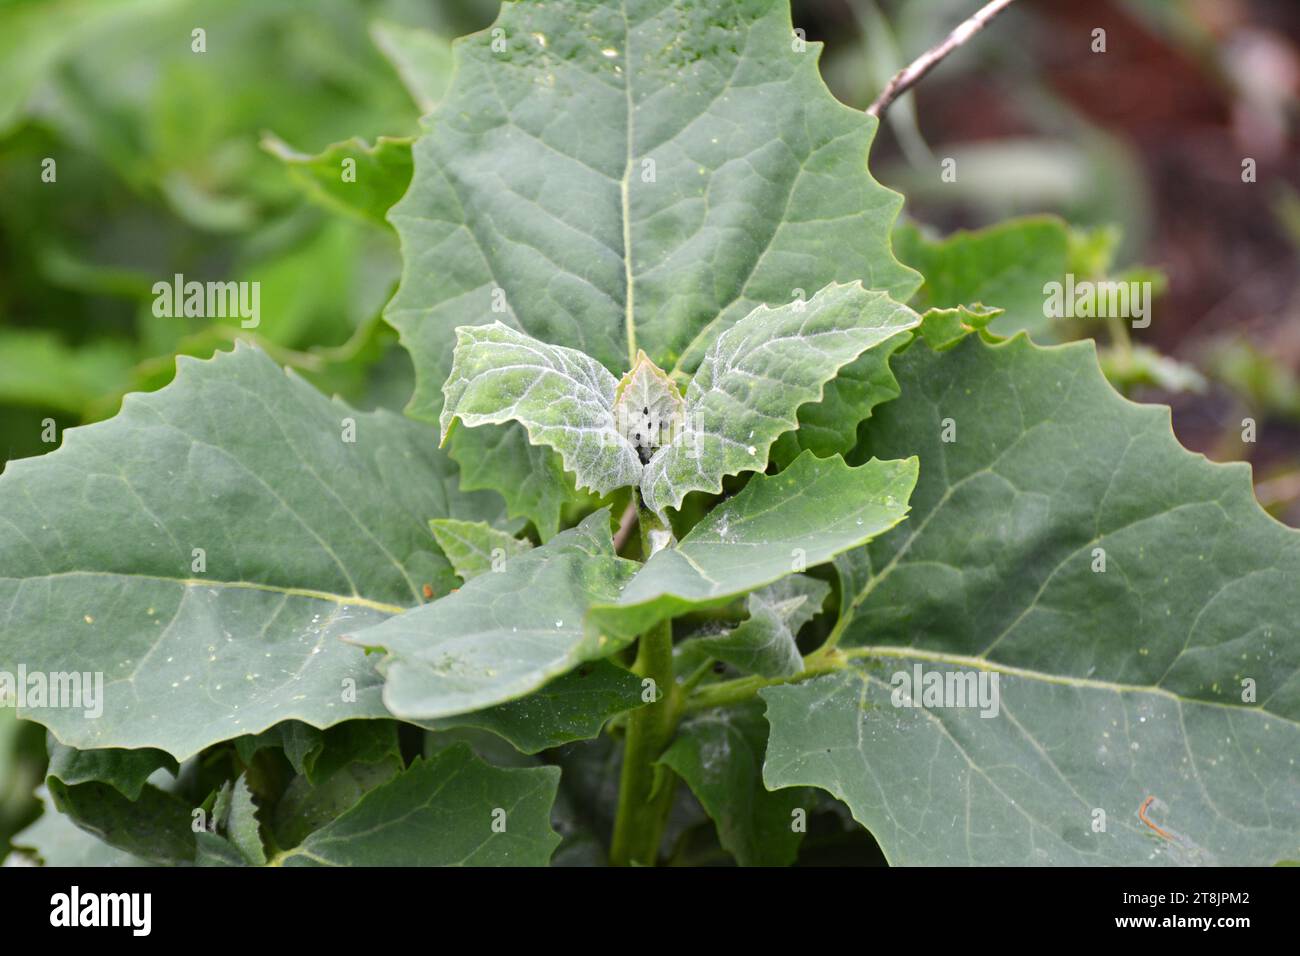 In spring, the edible plant orach (Atriplex hortensis) grows in the garden Stock Photo